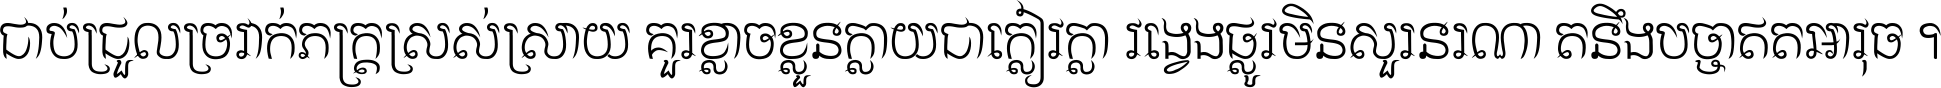 Khmer CN Samlot